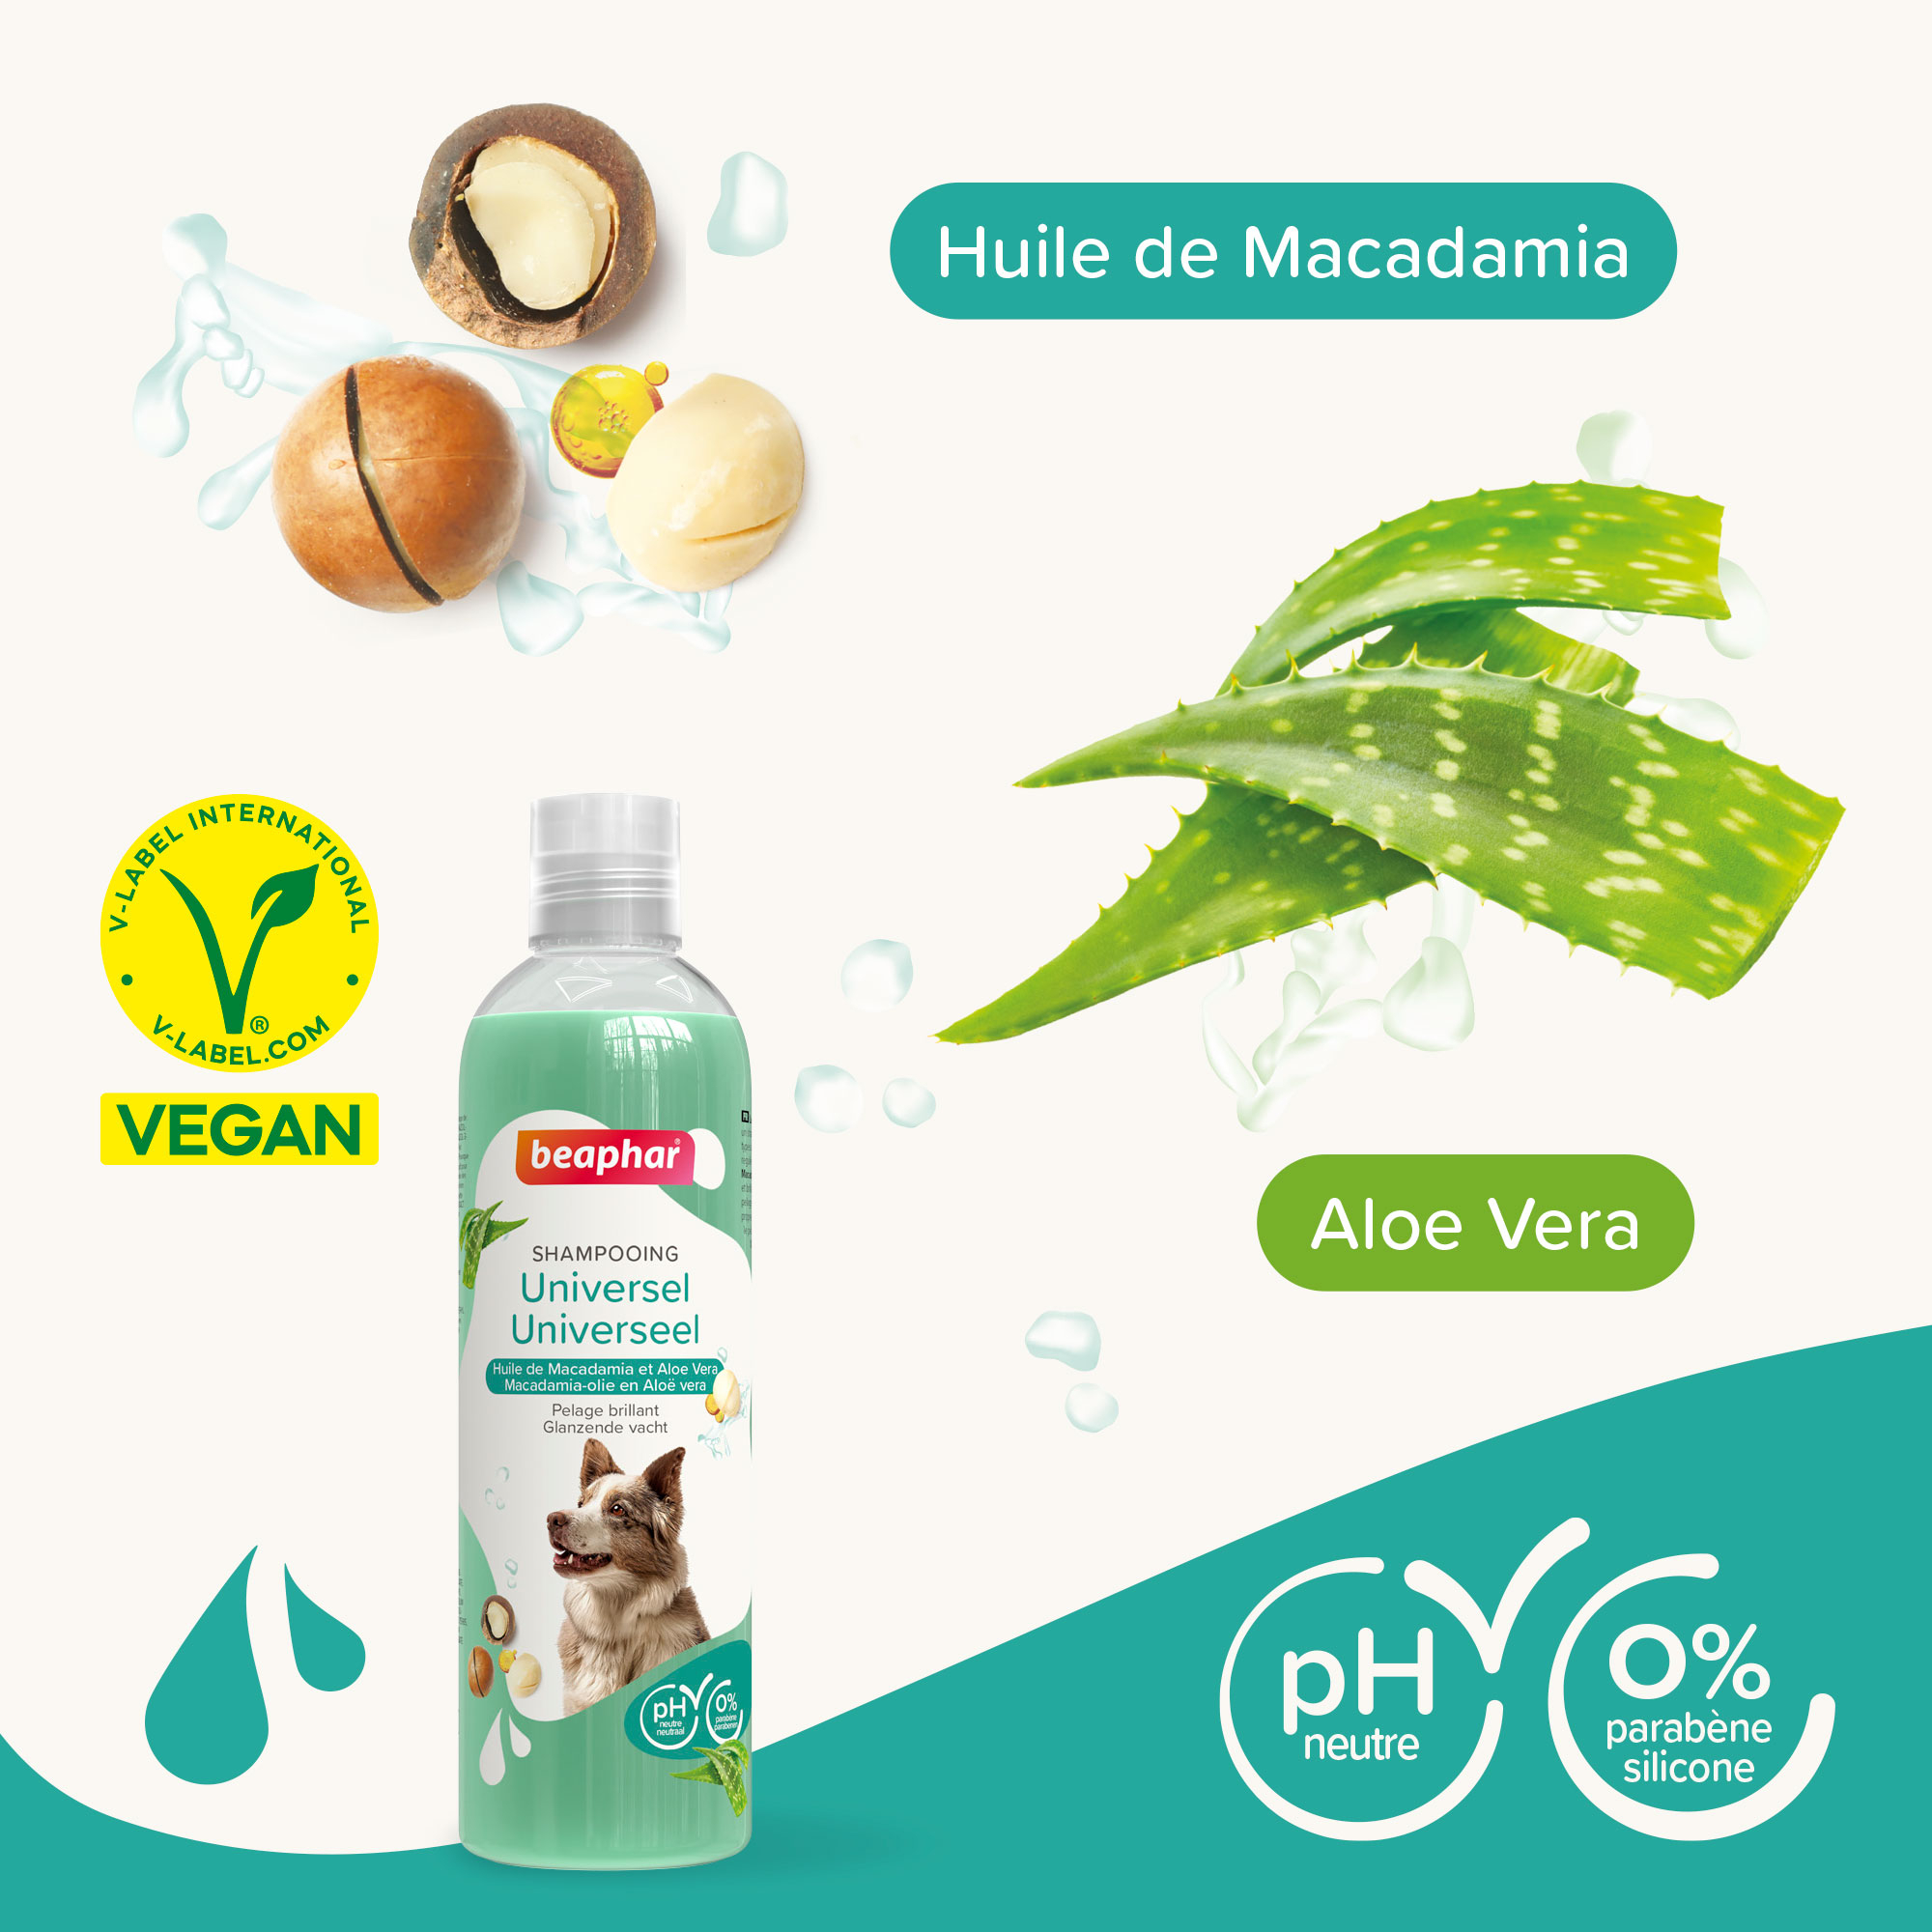 Shampoing Essentiel Universel pour chien à l'Aloe Vera et huile de macadamia